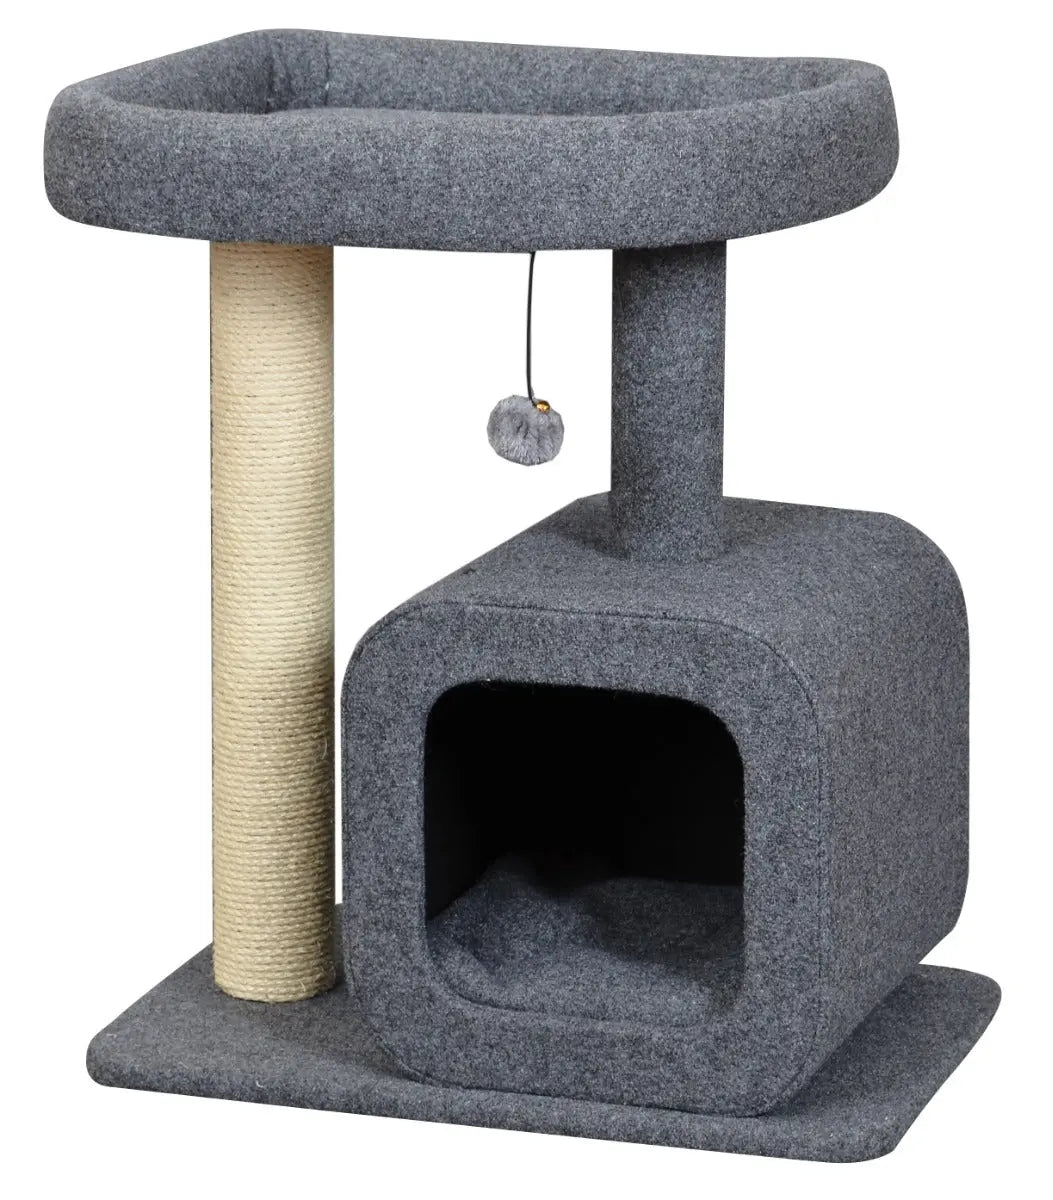 Krabpaal voor katten met huisje | Houd je kat vermaakt | 2 niveaus | Gezellige slaapplek | Springplatform